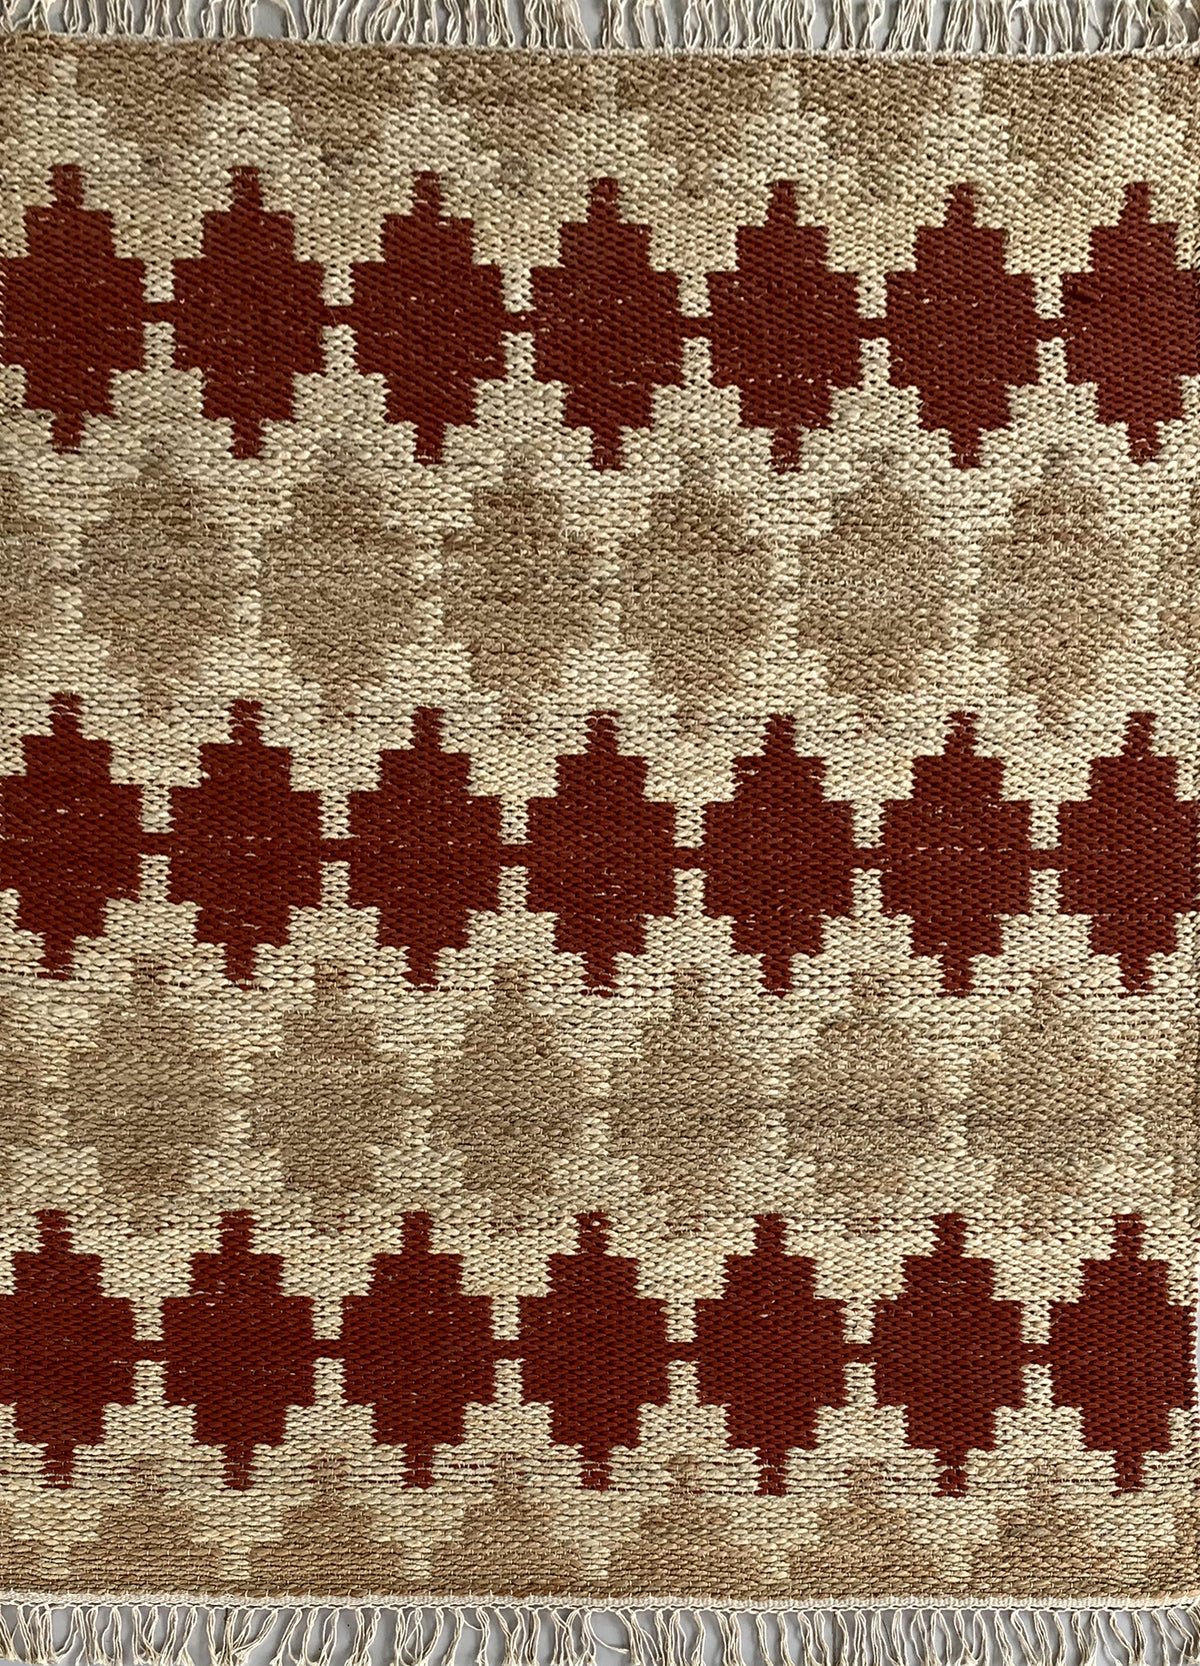 Rugslane Multi Modern Jute Carpet 4.0ft X 6.0ft